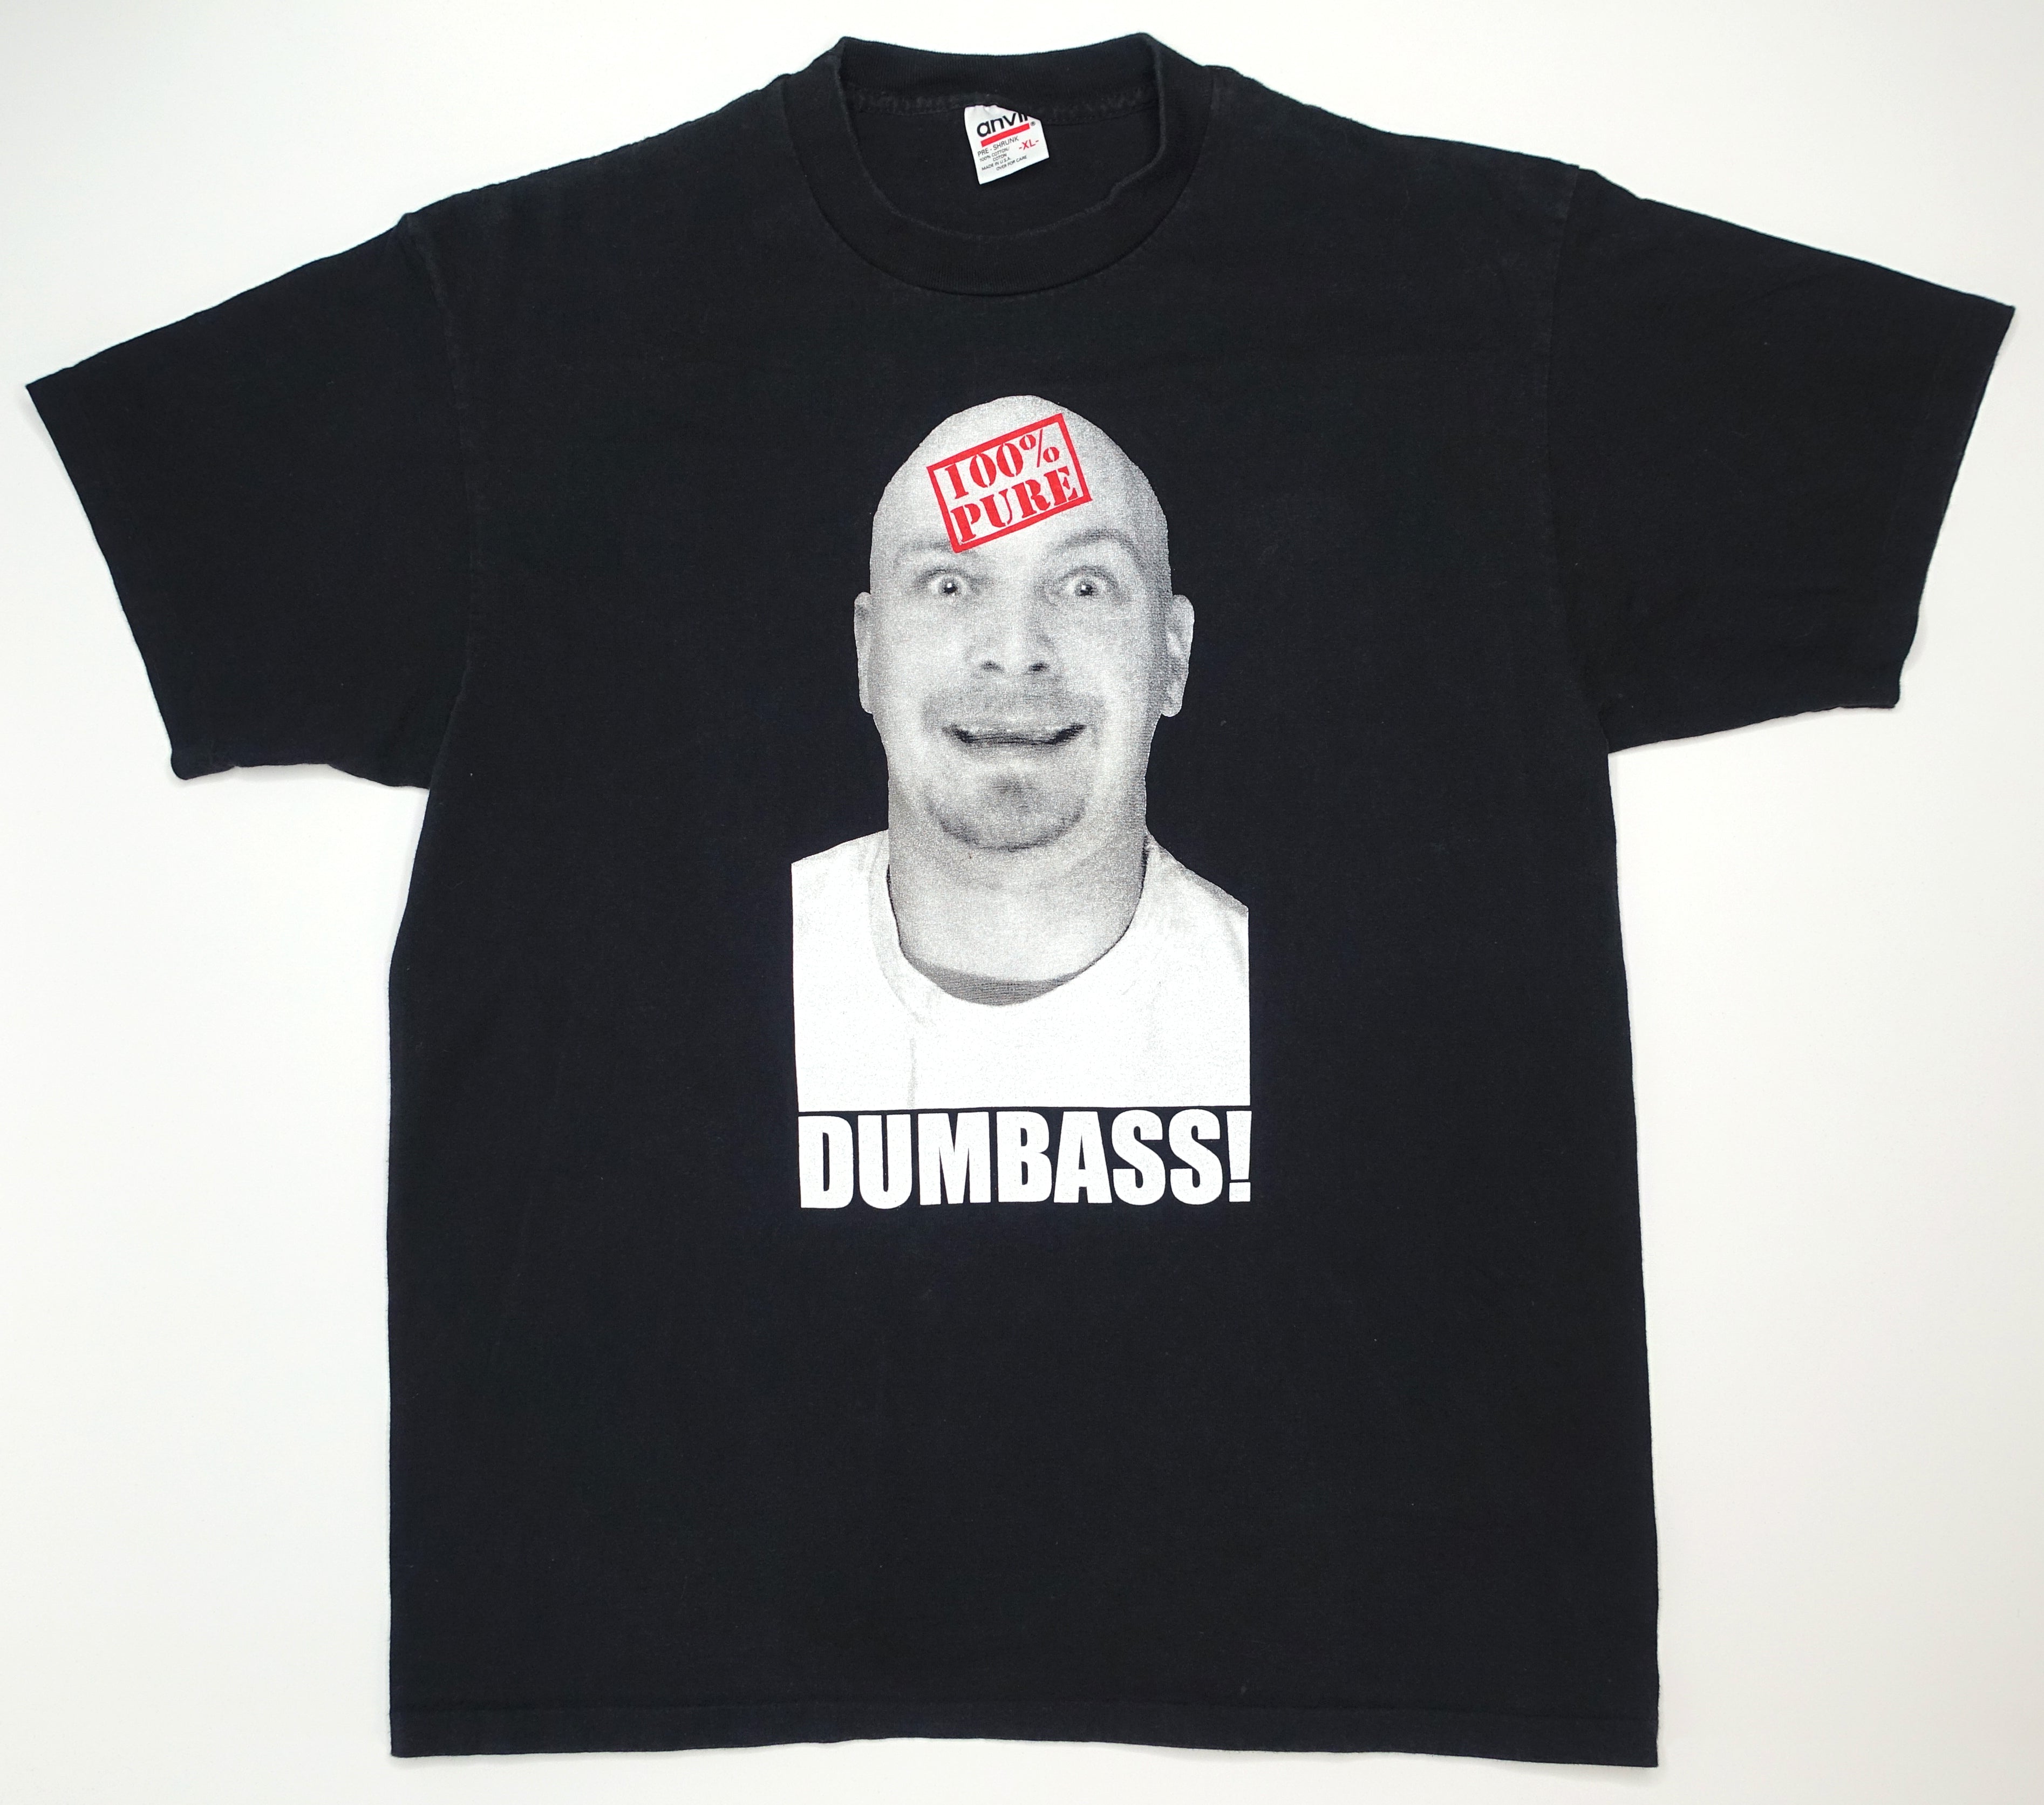 the Vandals - 100% Pure Dumbass! Tour Shirt Size XL